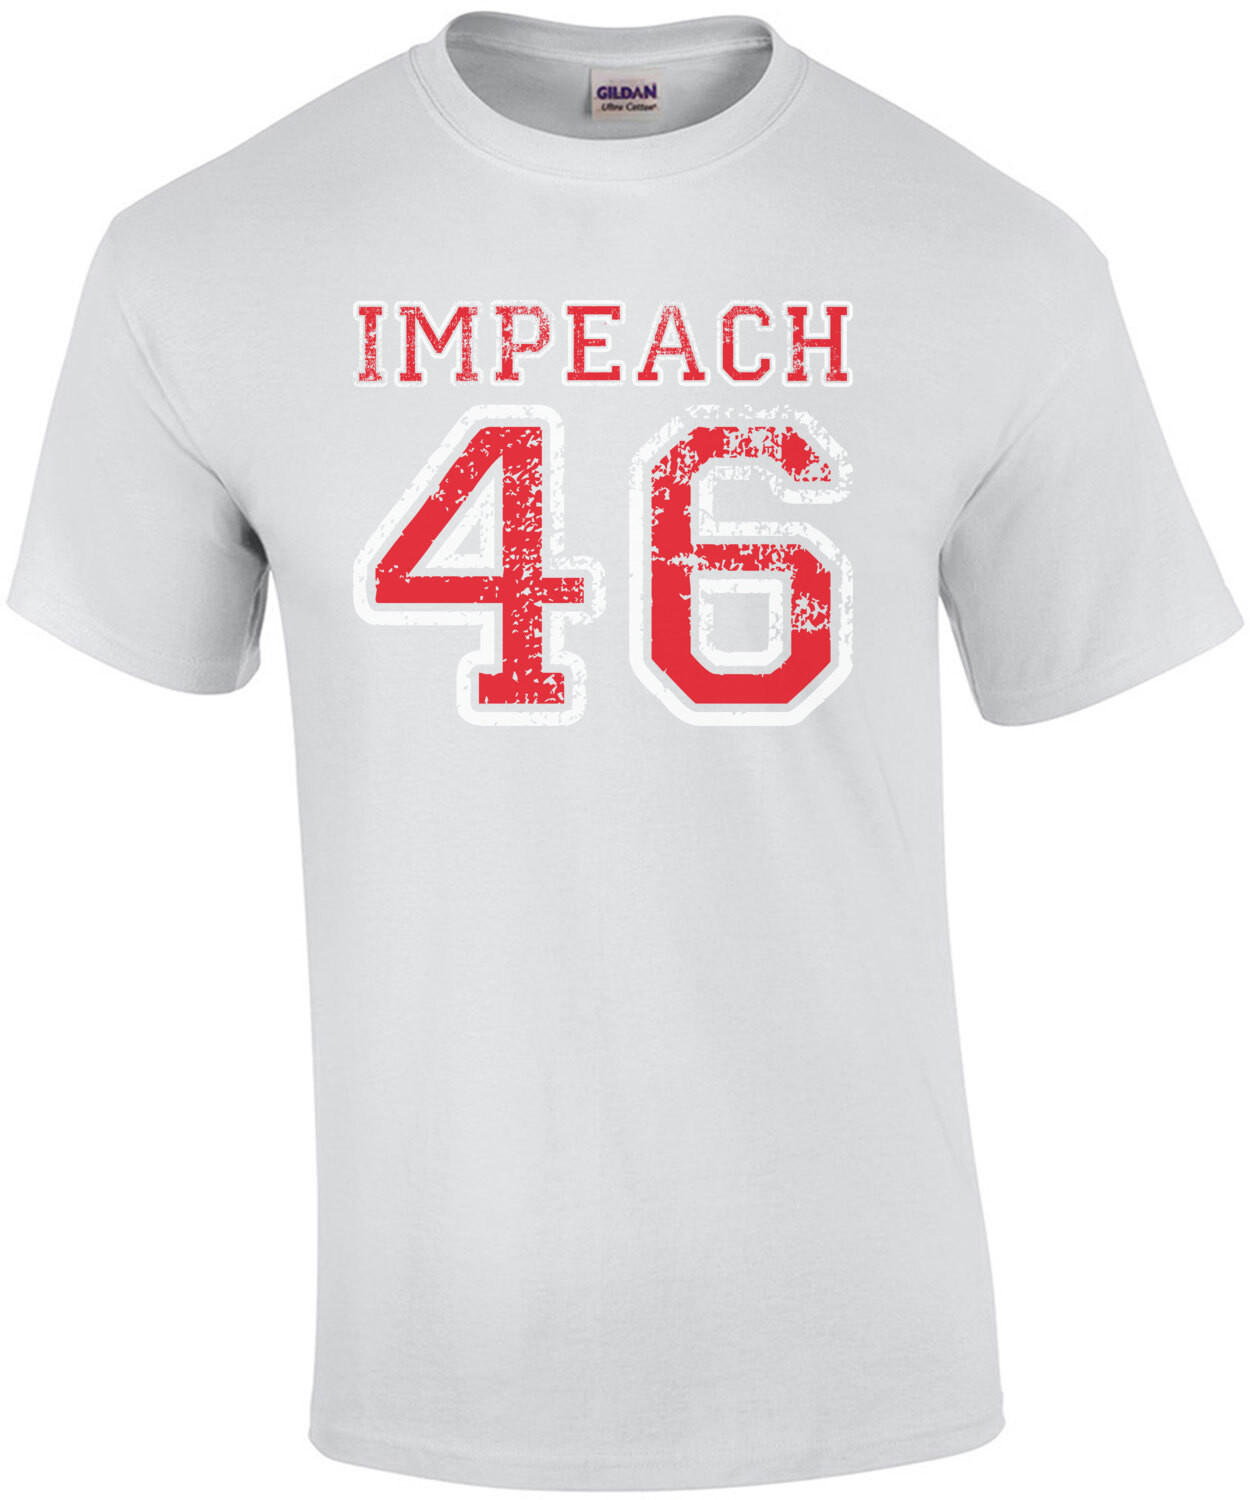 Impeach 46 - Anti Joe Biden Shirt